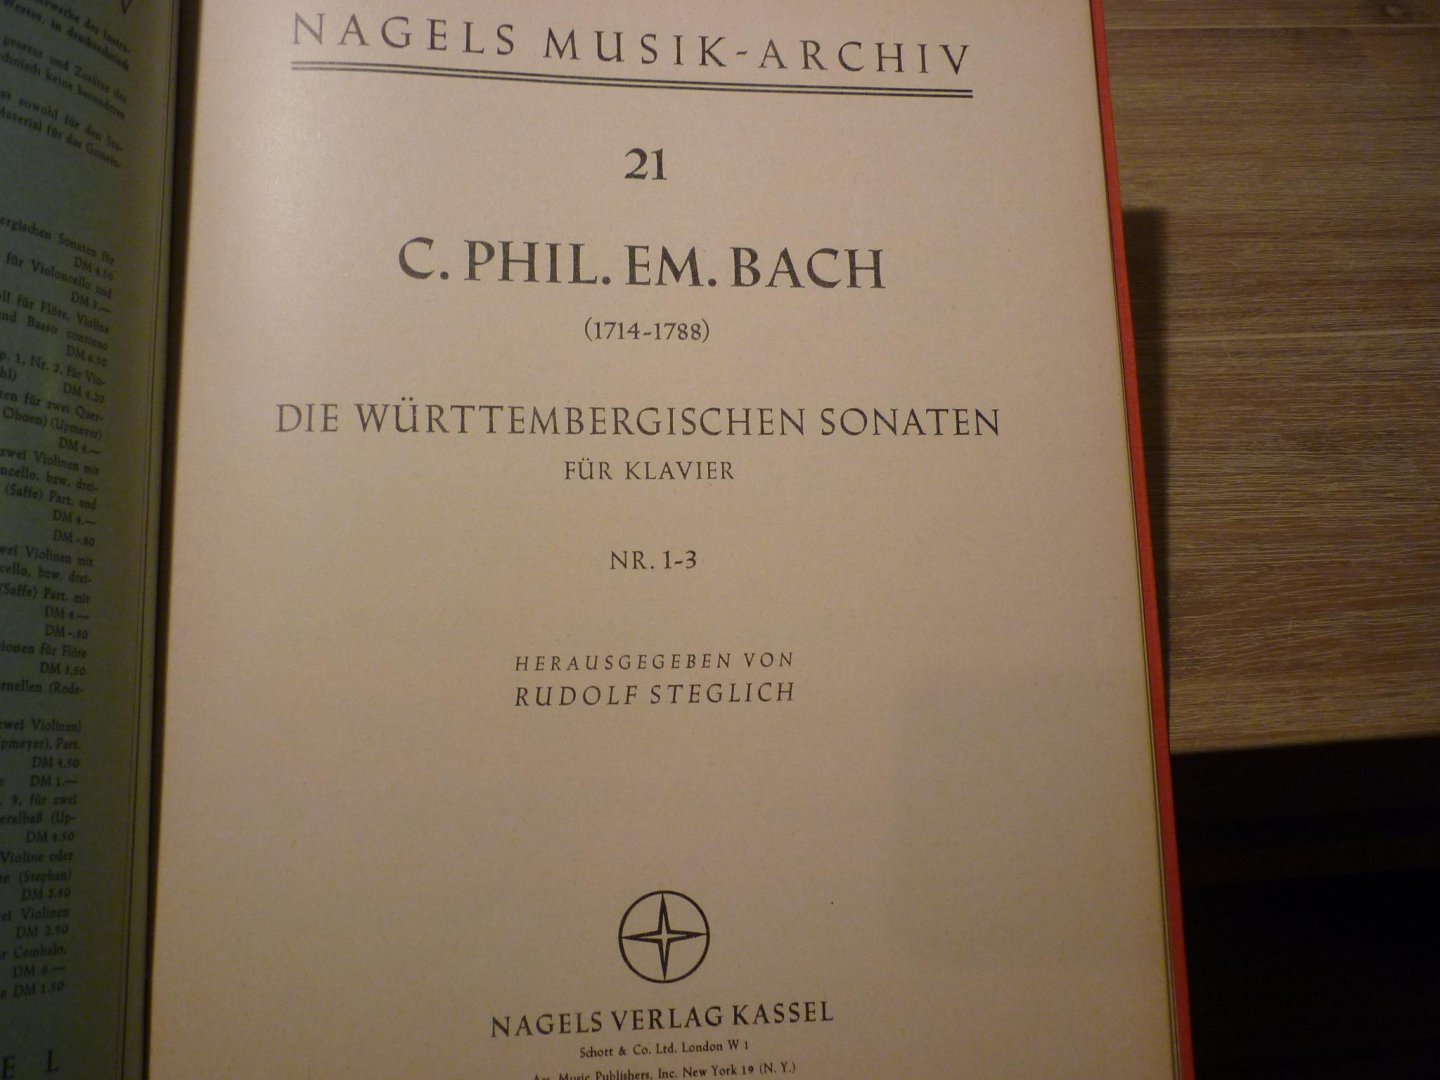 Bach; Carl Philipp Emanuel (1714 - 1788) - Die Preussischen Sonaten fur Klavier; No. 1-6  /  Die Wurttembergischen Sonaten fur Klavier; No. 1-6